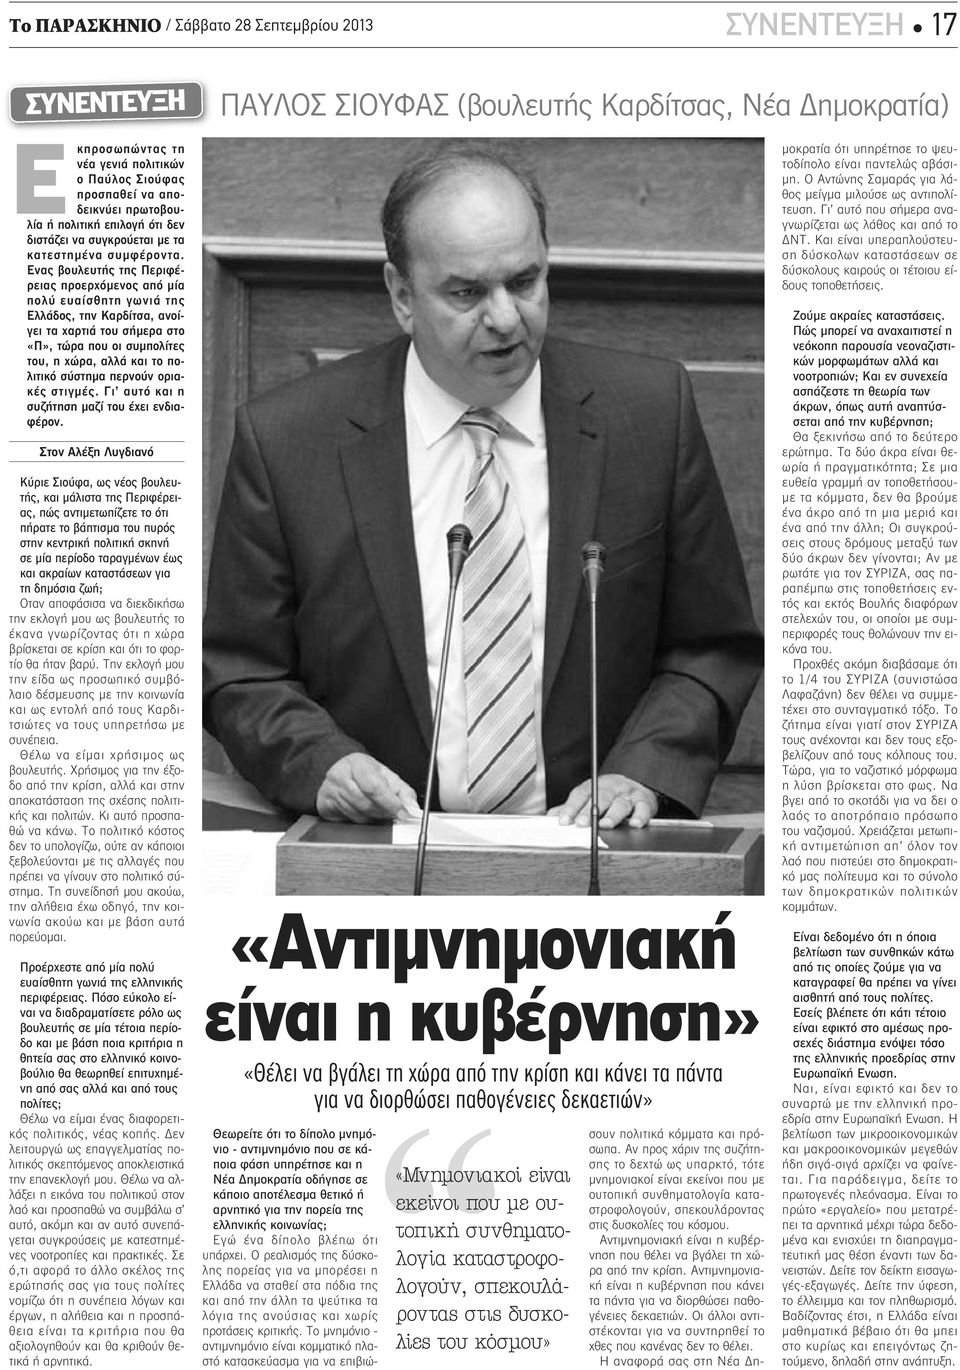 Ενας βουλευτής της Περιφέρειας προερχόμενος από μία πολύ ευαίσθητη γωνιά της Ελλάδος, την Καρδίτσα, ανοίγει τα χαρτιά του σήμερα στο «Π», τώρα που οι συμπολίτες του, η χώρα, αλλά και το πολιτικό